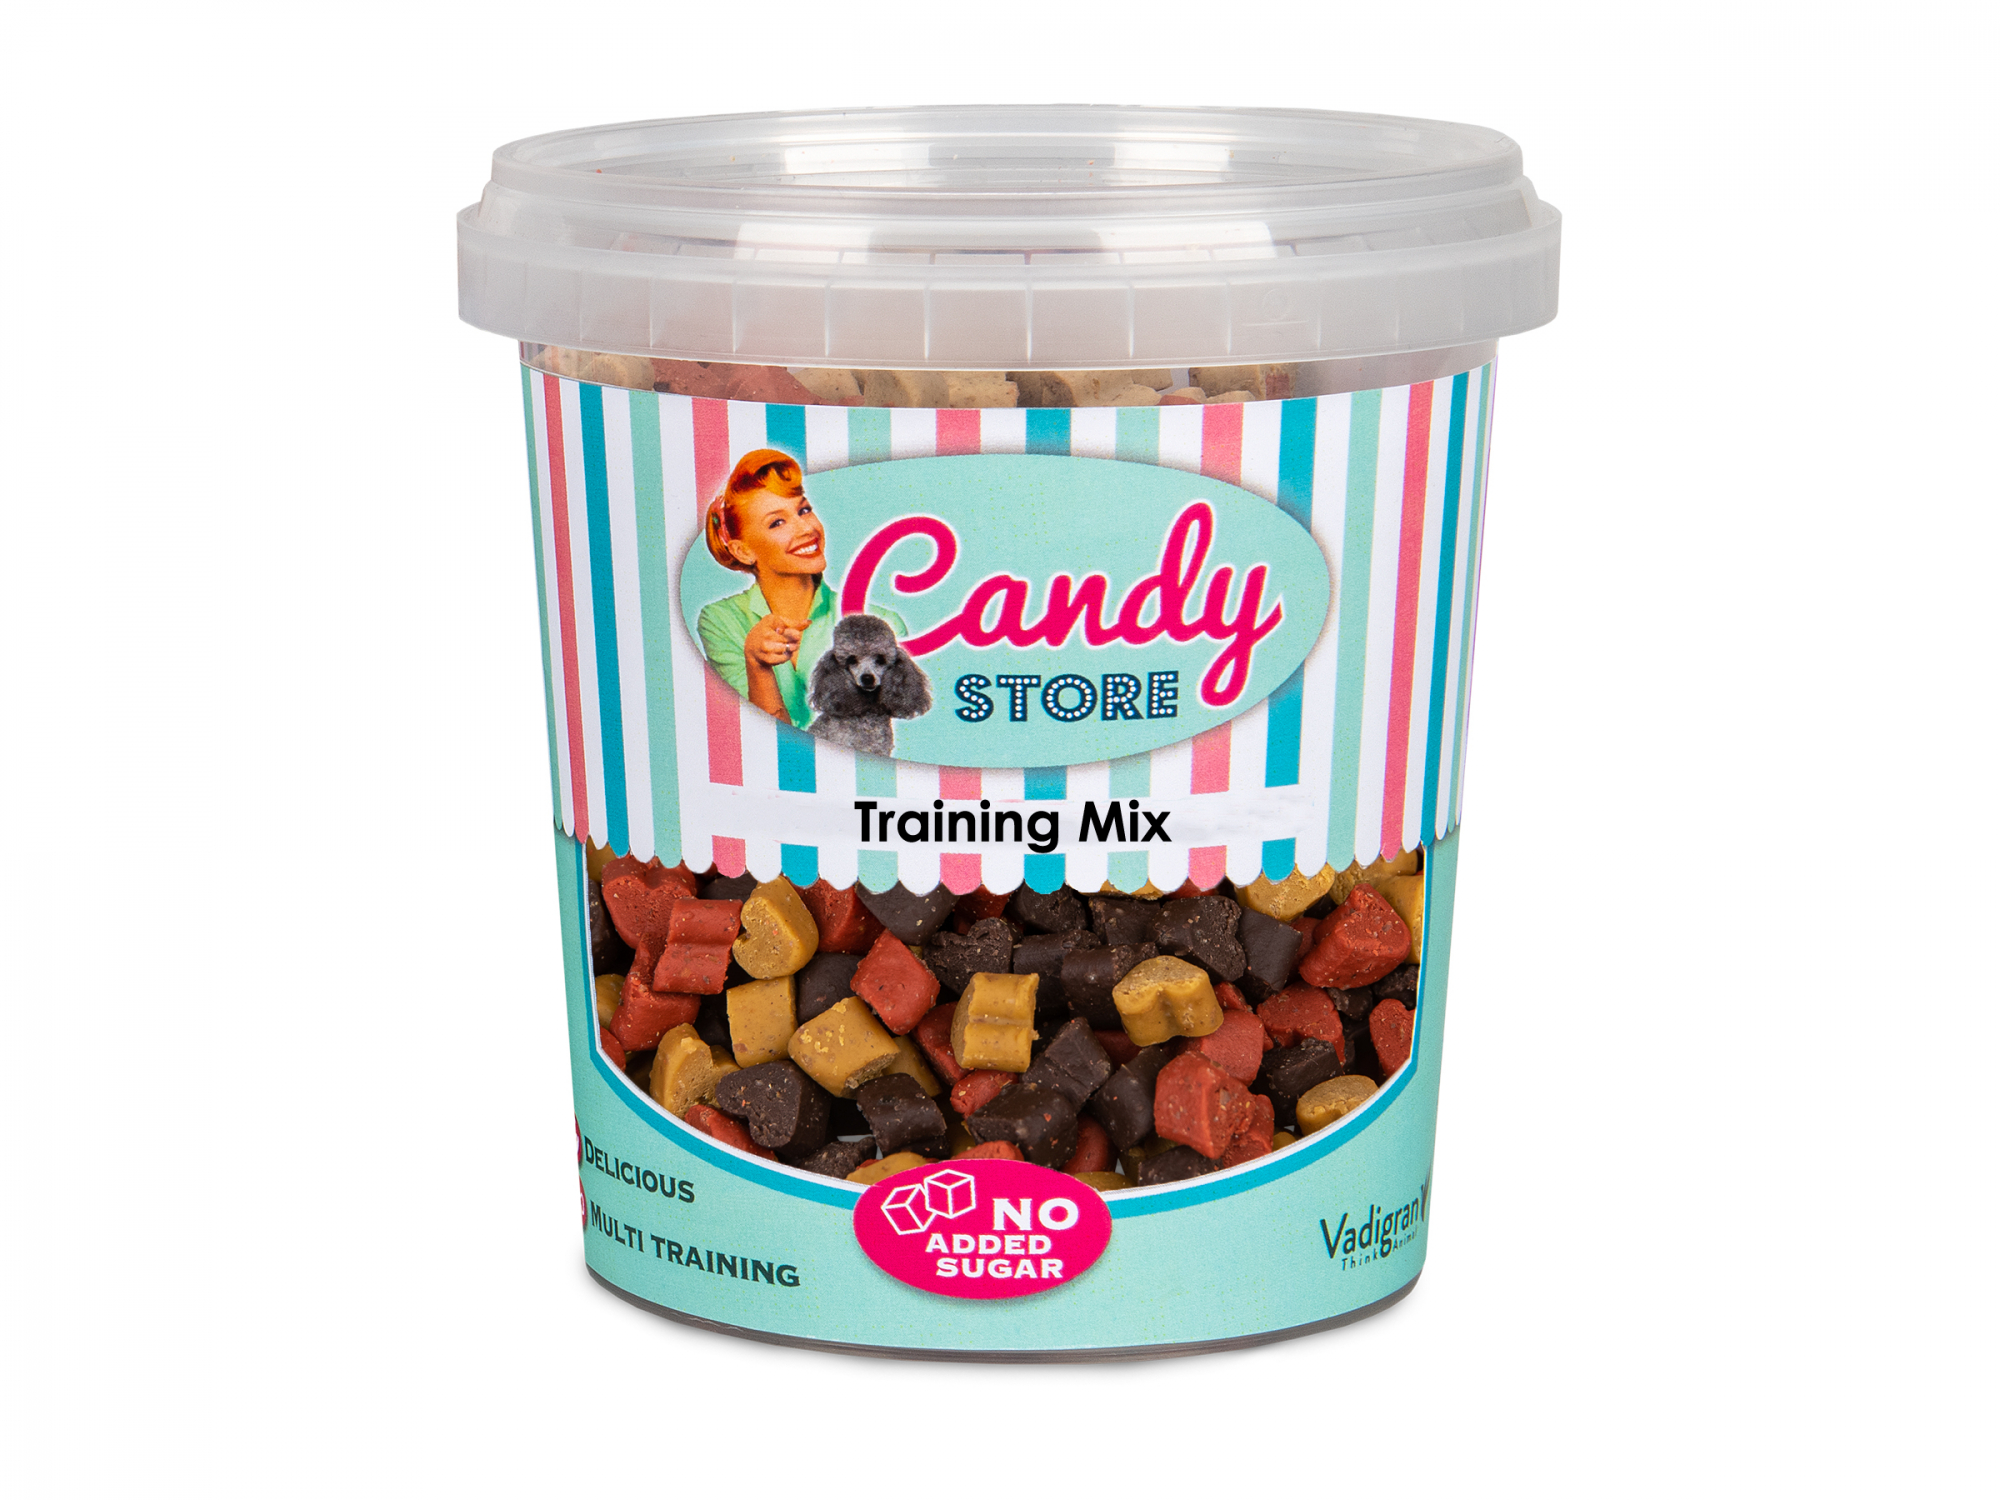 Friandises pour chien - Candy Training Mix 